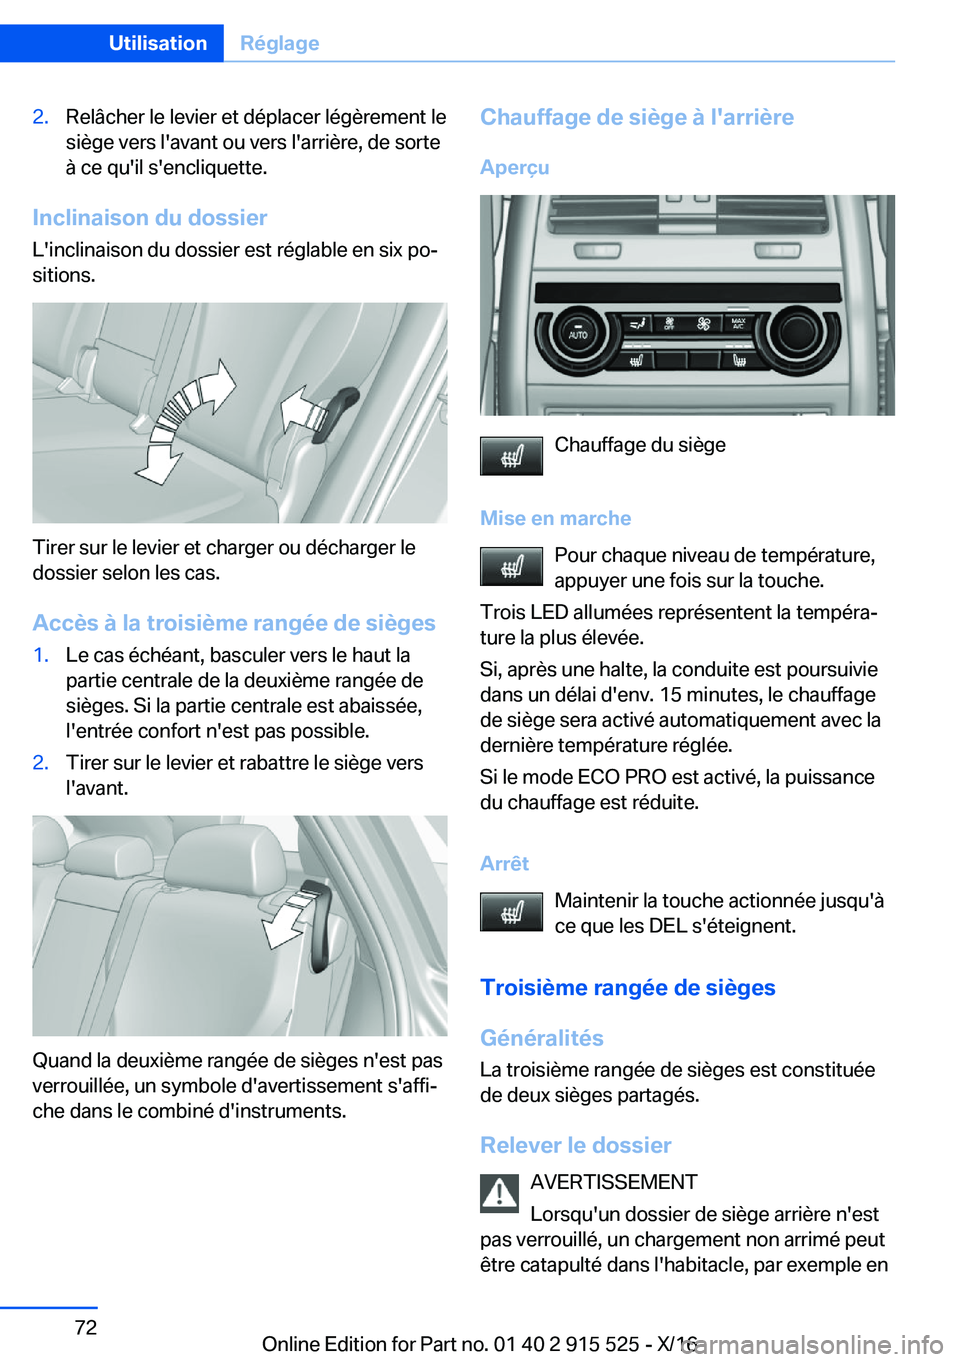 BMW X5 2017  Notices Demploi (in French) �2�.�R�e�l�â�c�h�e�r� �l�e� �l�e�v�i�e�r� �e�t� �d�é�p�l�a�c�e�r� �l�é�g�è�r�e�m�e�n�t� �l�e�s�i�è�g�e� �v�e�r�s� �l�'�a�v�a�n�t� �o�u� �v�e�r�s� �l�'�a�r�r�i�è�r�e�,� �d�e� �s�o�r�t�e
�